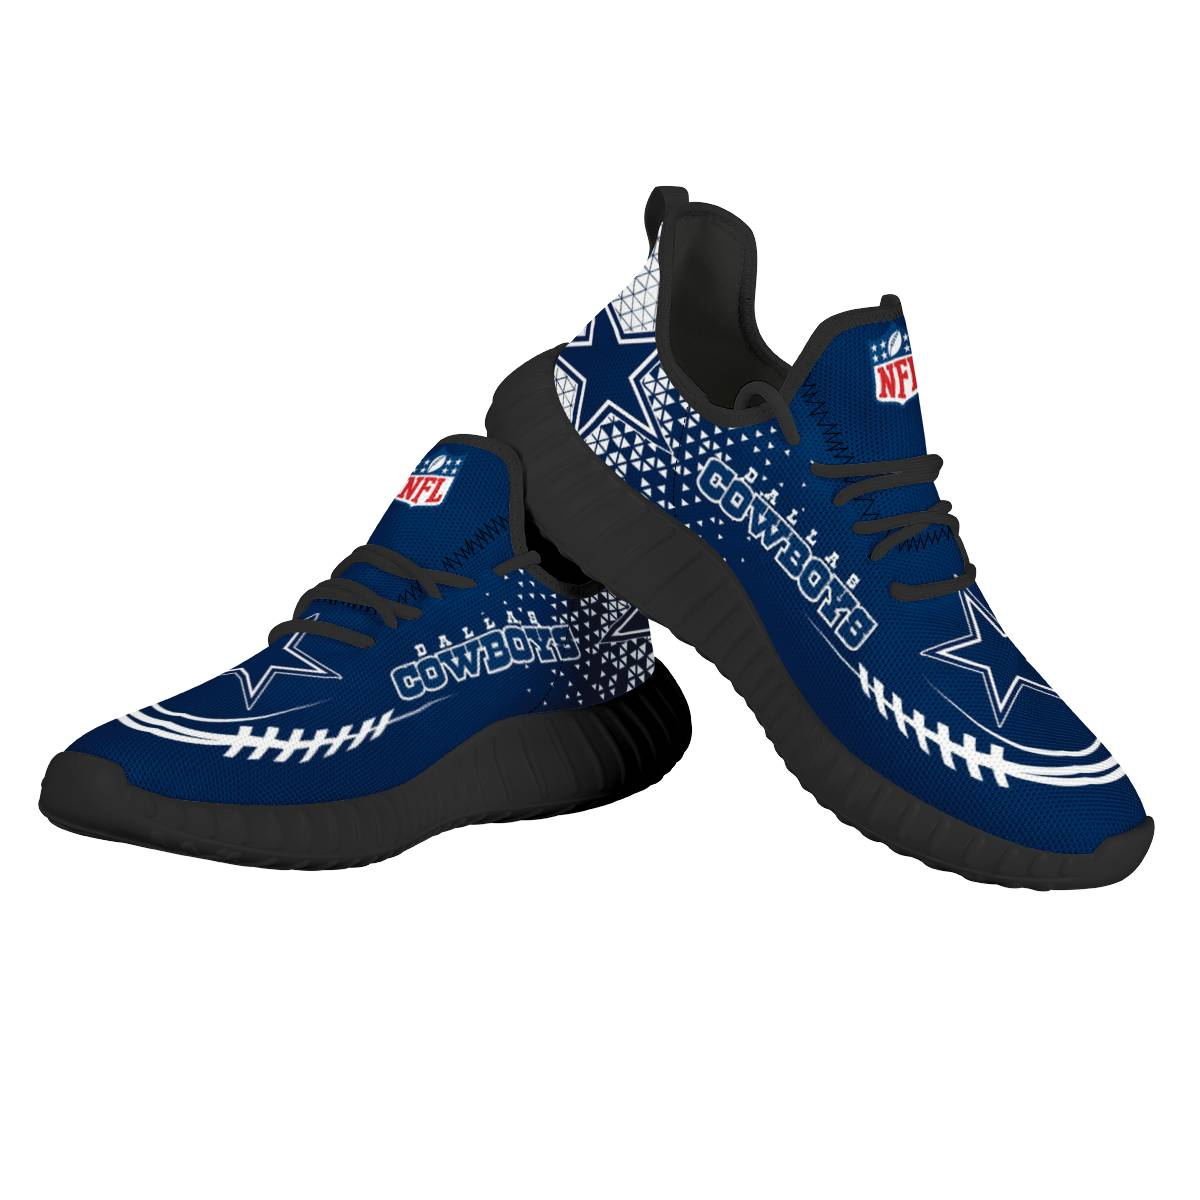 Men's NFL Dallas Cowboys Mesh Knit Sneakers/Shoes 012